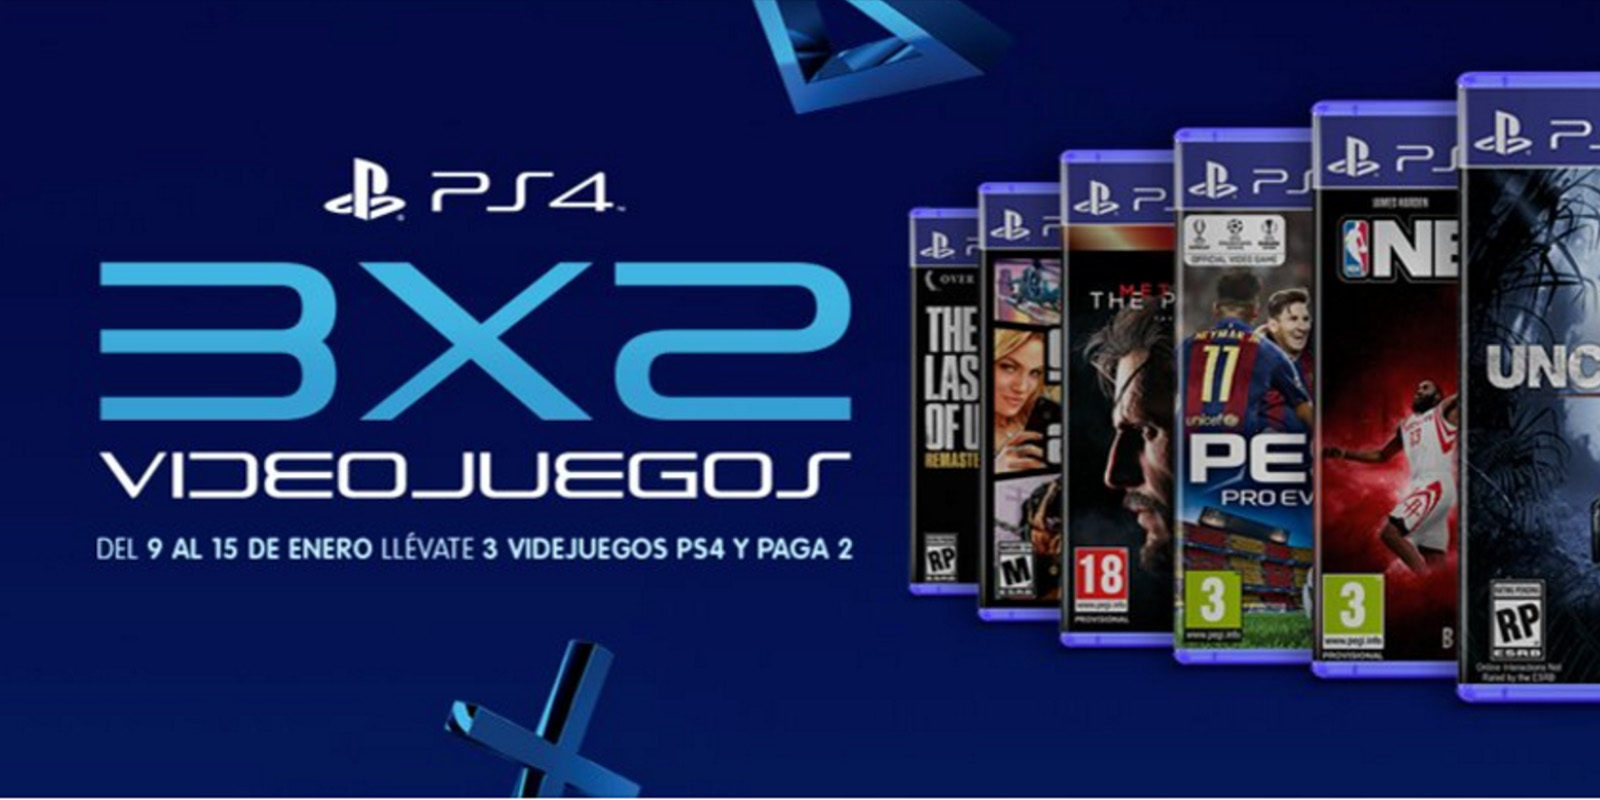 Oferta 3x2 para juegos de PS4 en Cash Converters